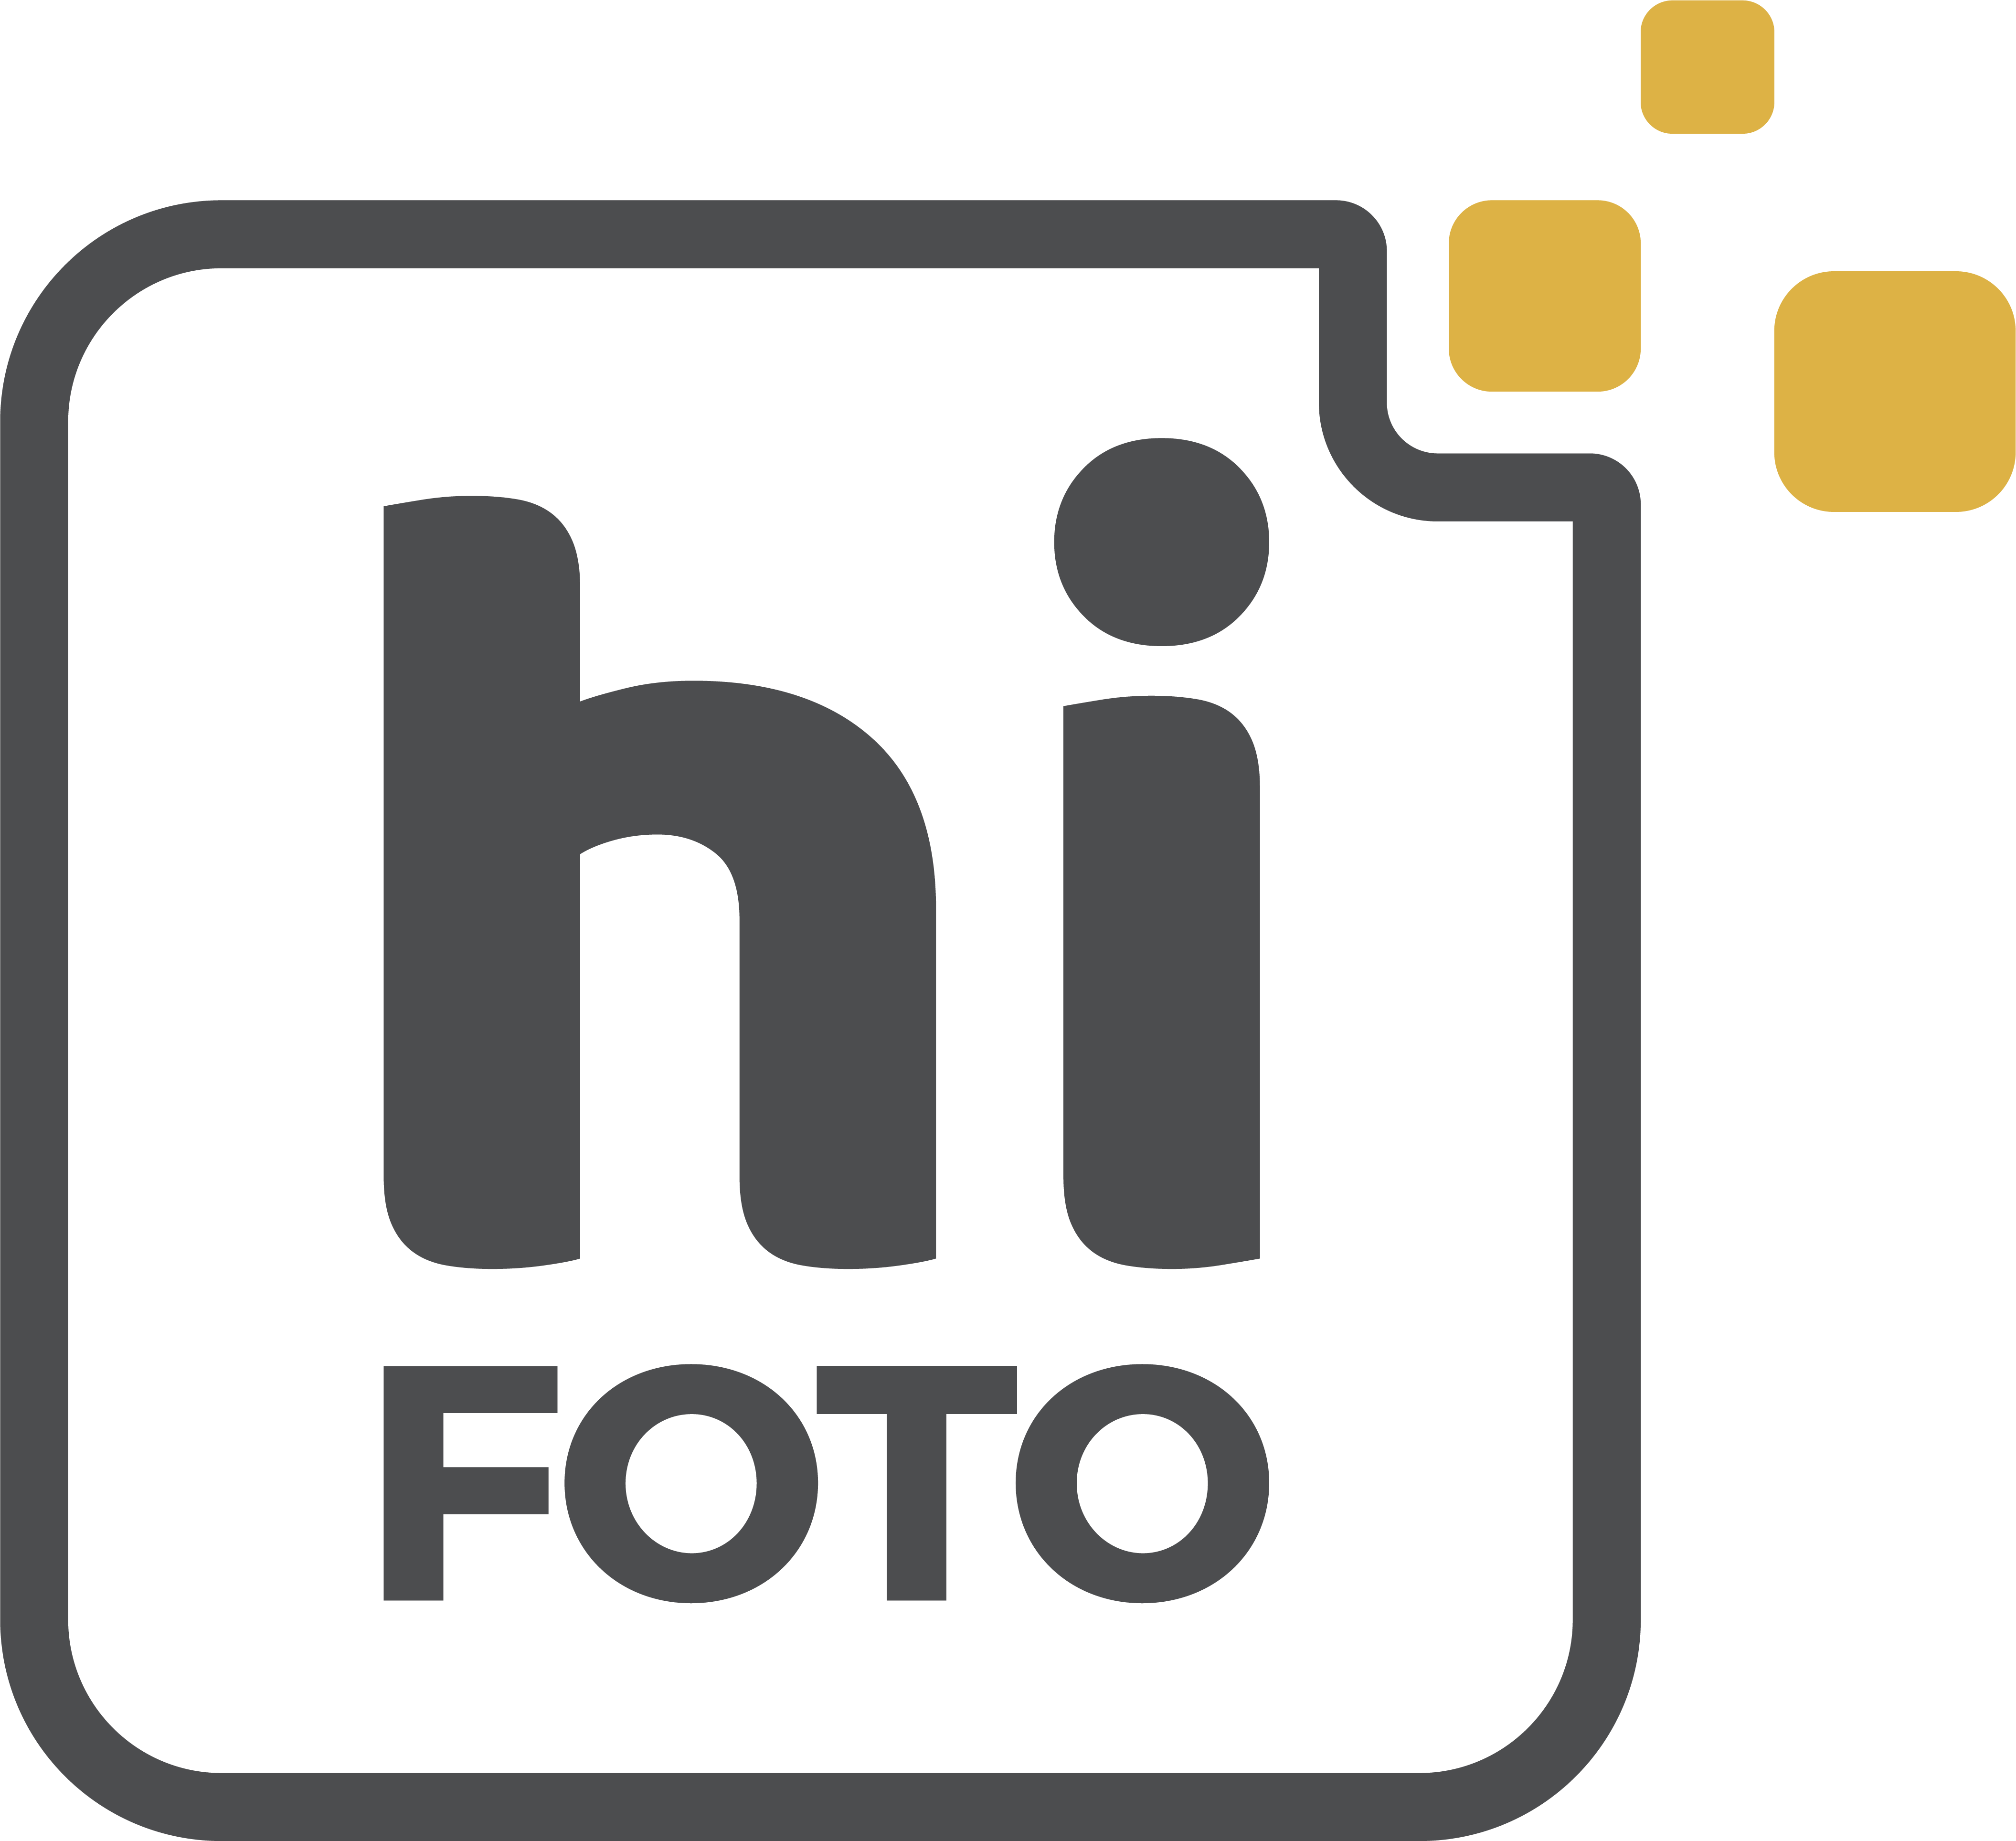 Hifoto - Chụp ảnh sản phẩm